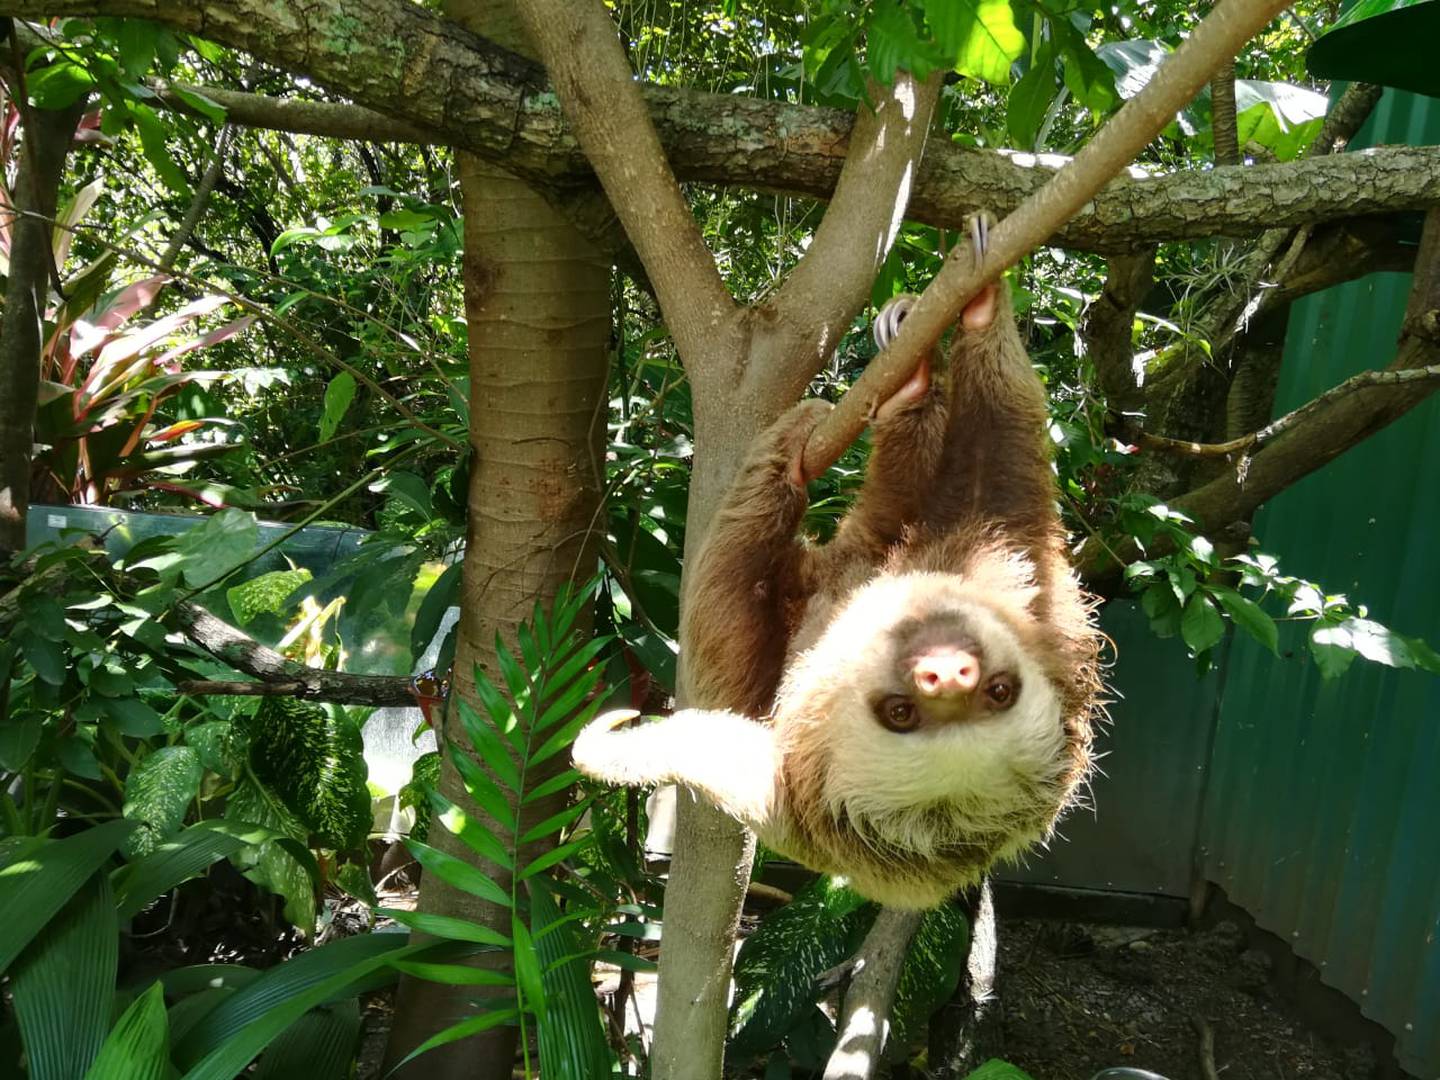 Refugio Animal de Costa Rica recibió en abril pasado 3 tucanes esmeralda